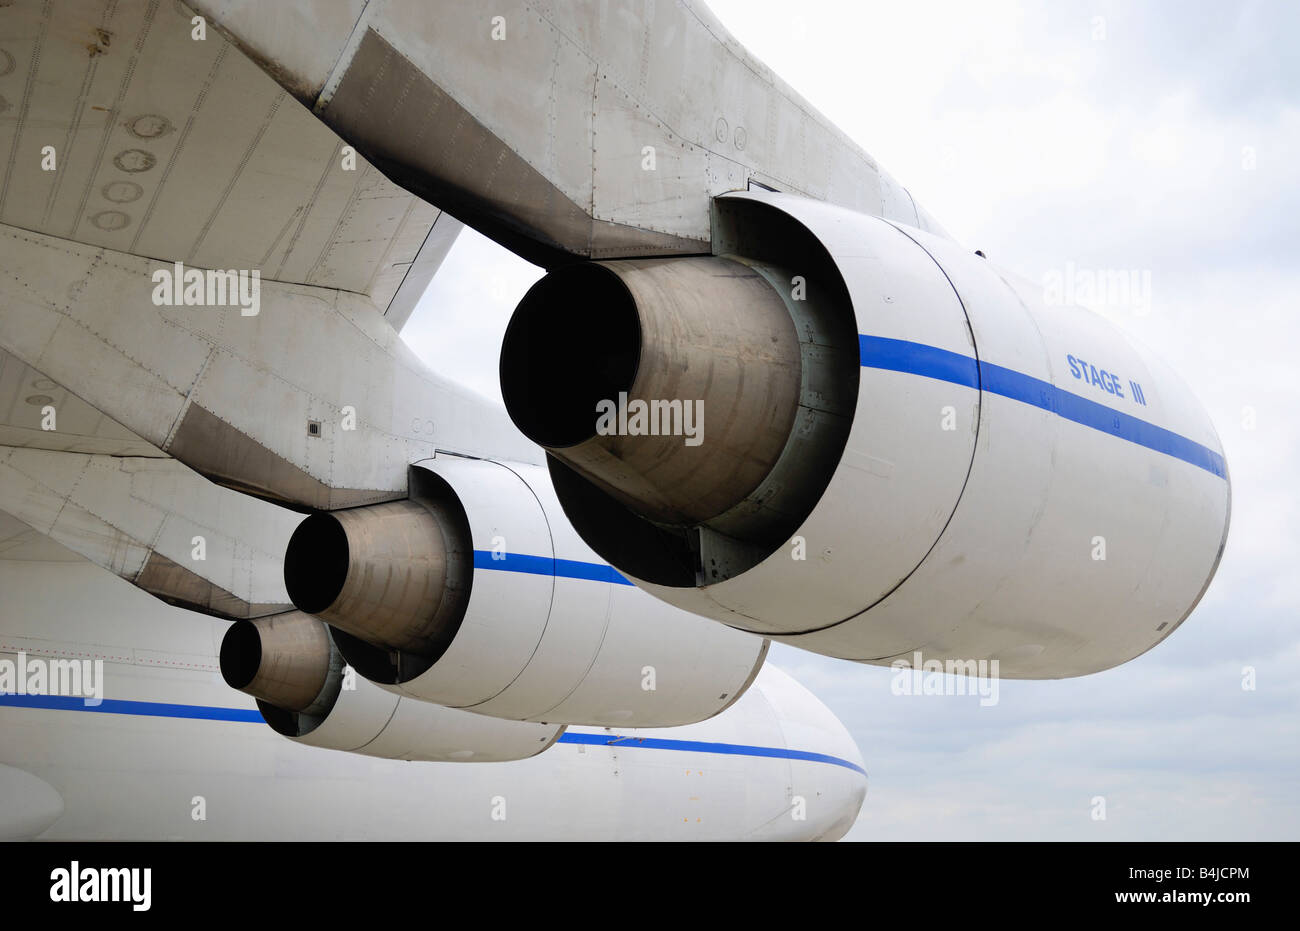 Turbo-Strahltriebwerke unter weißen Flügel des großen Frachtflugzeug gegen bedecktem Himmel, glatten Oberflächen und fließenden Linien der aerodynamischen Stockfoto